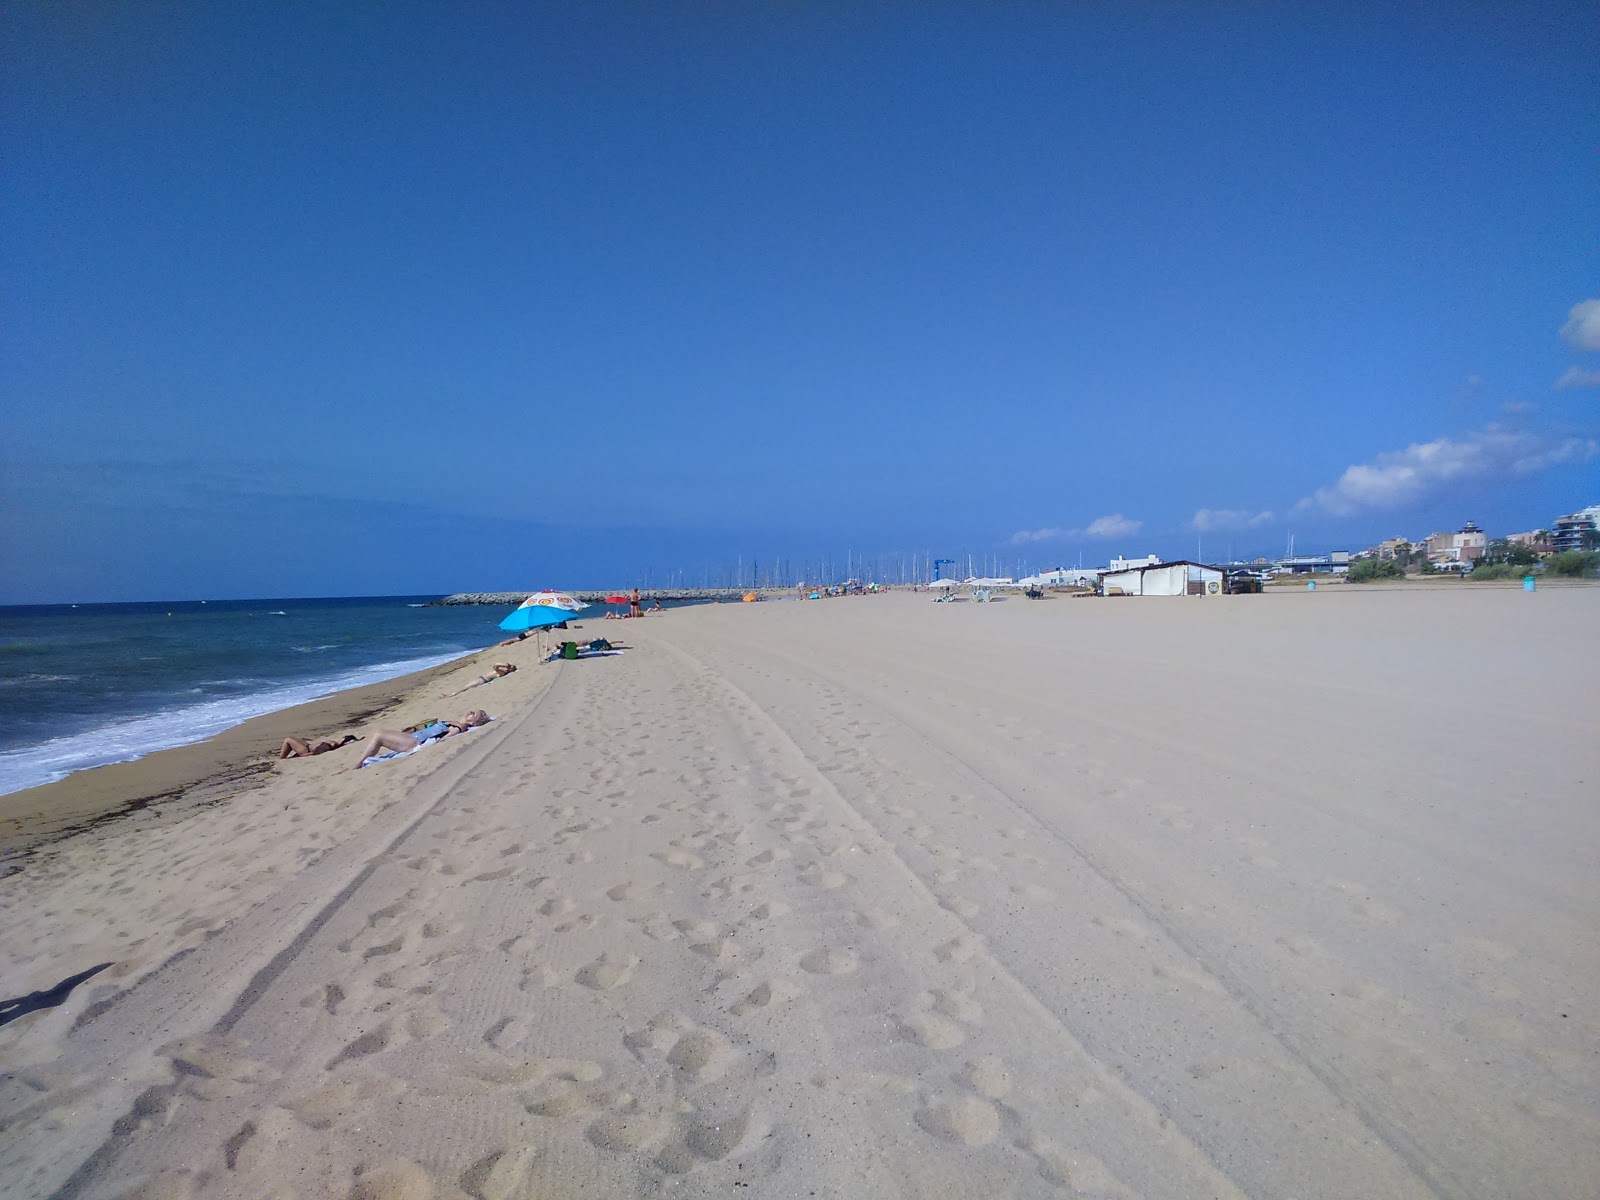 Playa de Bellamar'in fotoğrafı parlak kum yüzey ile